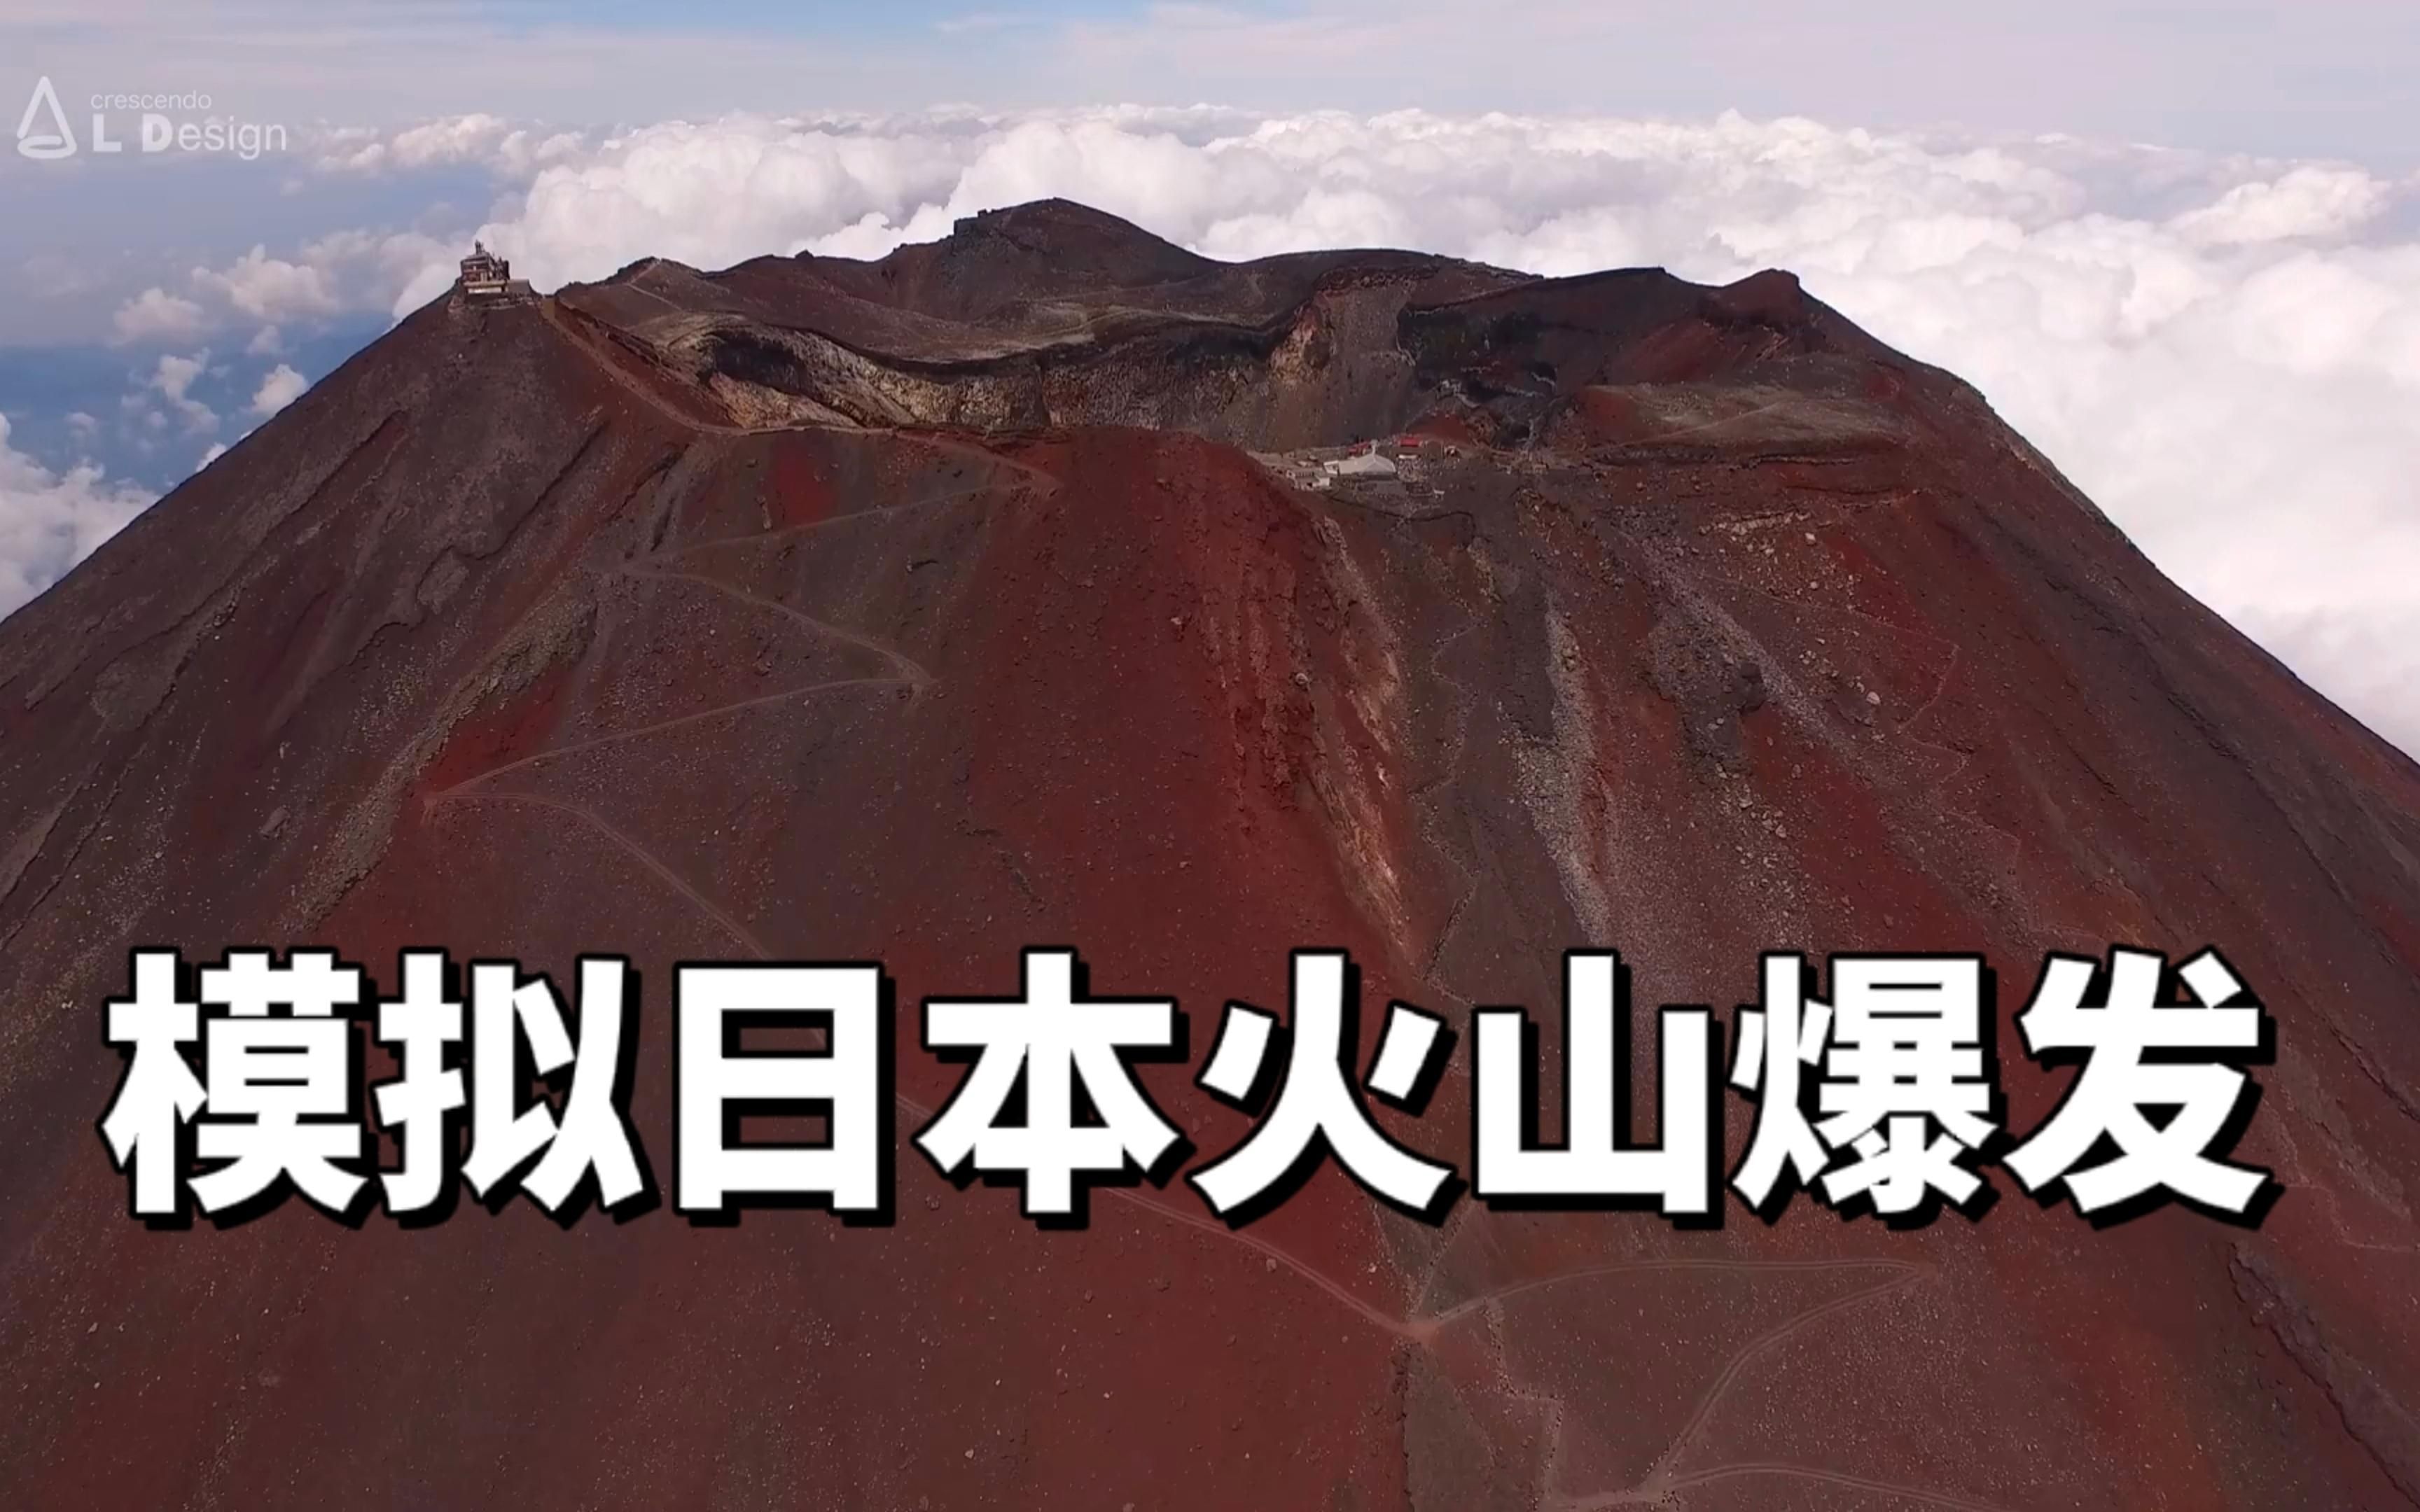 日本专家:富士山随时爆发,那时将会有2700万人受灾